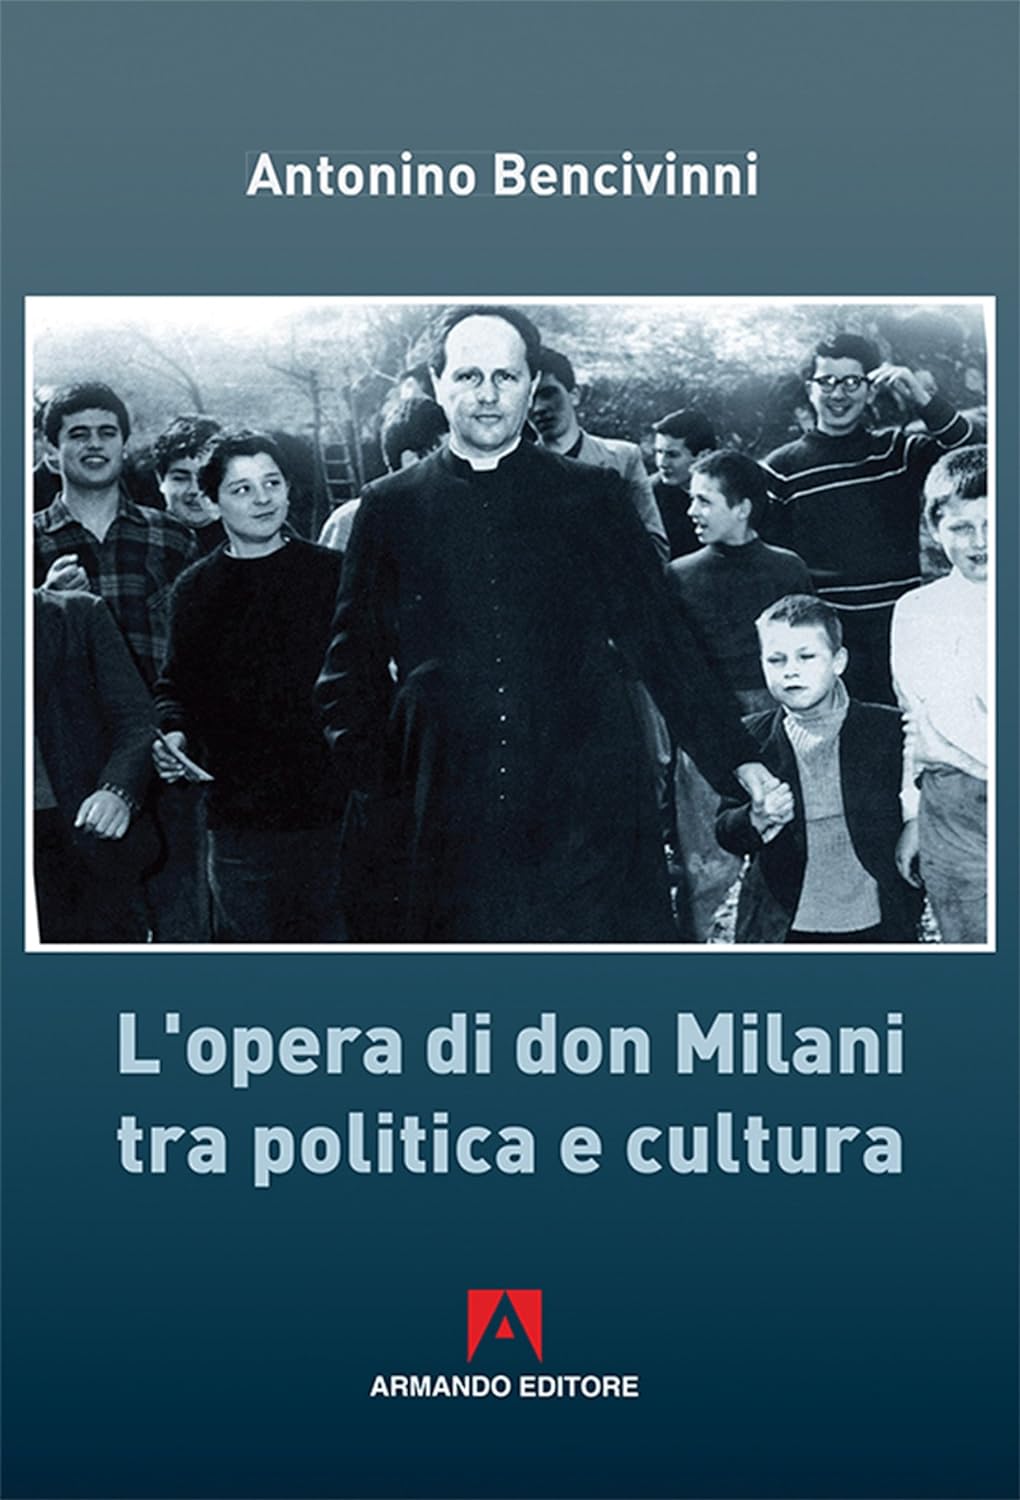 Successo del libro “Don Milani” edizioni Armando del nostro direttore. Il Volume è presente in tantissime biblioteche italiane e mondiali